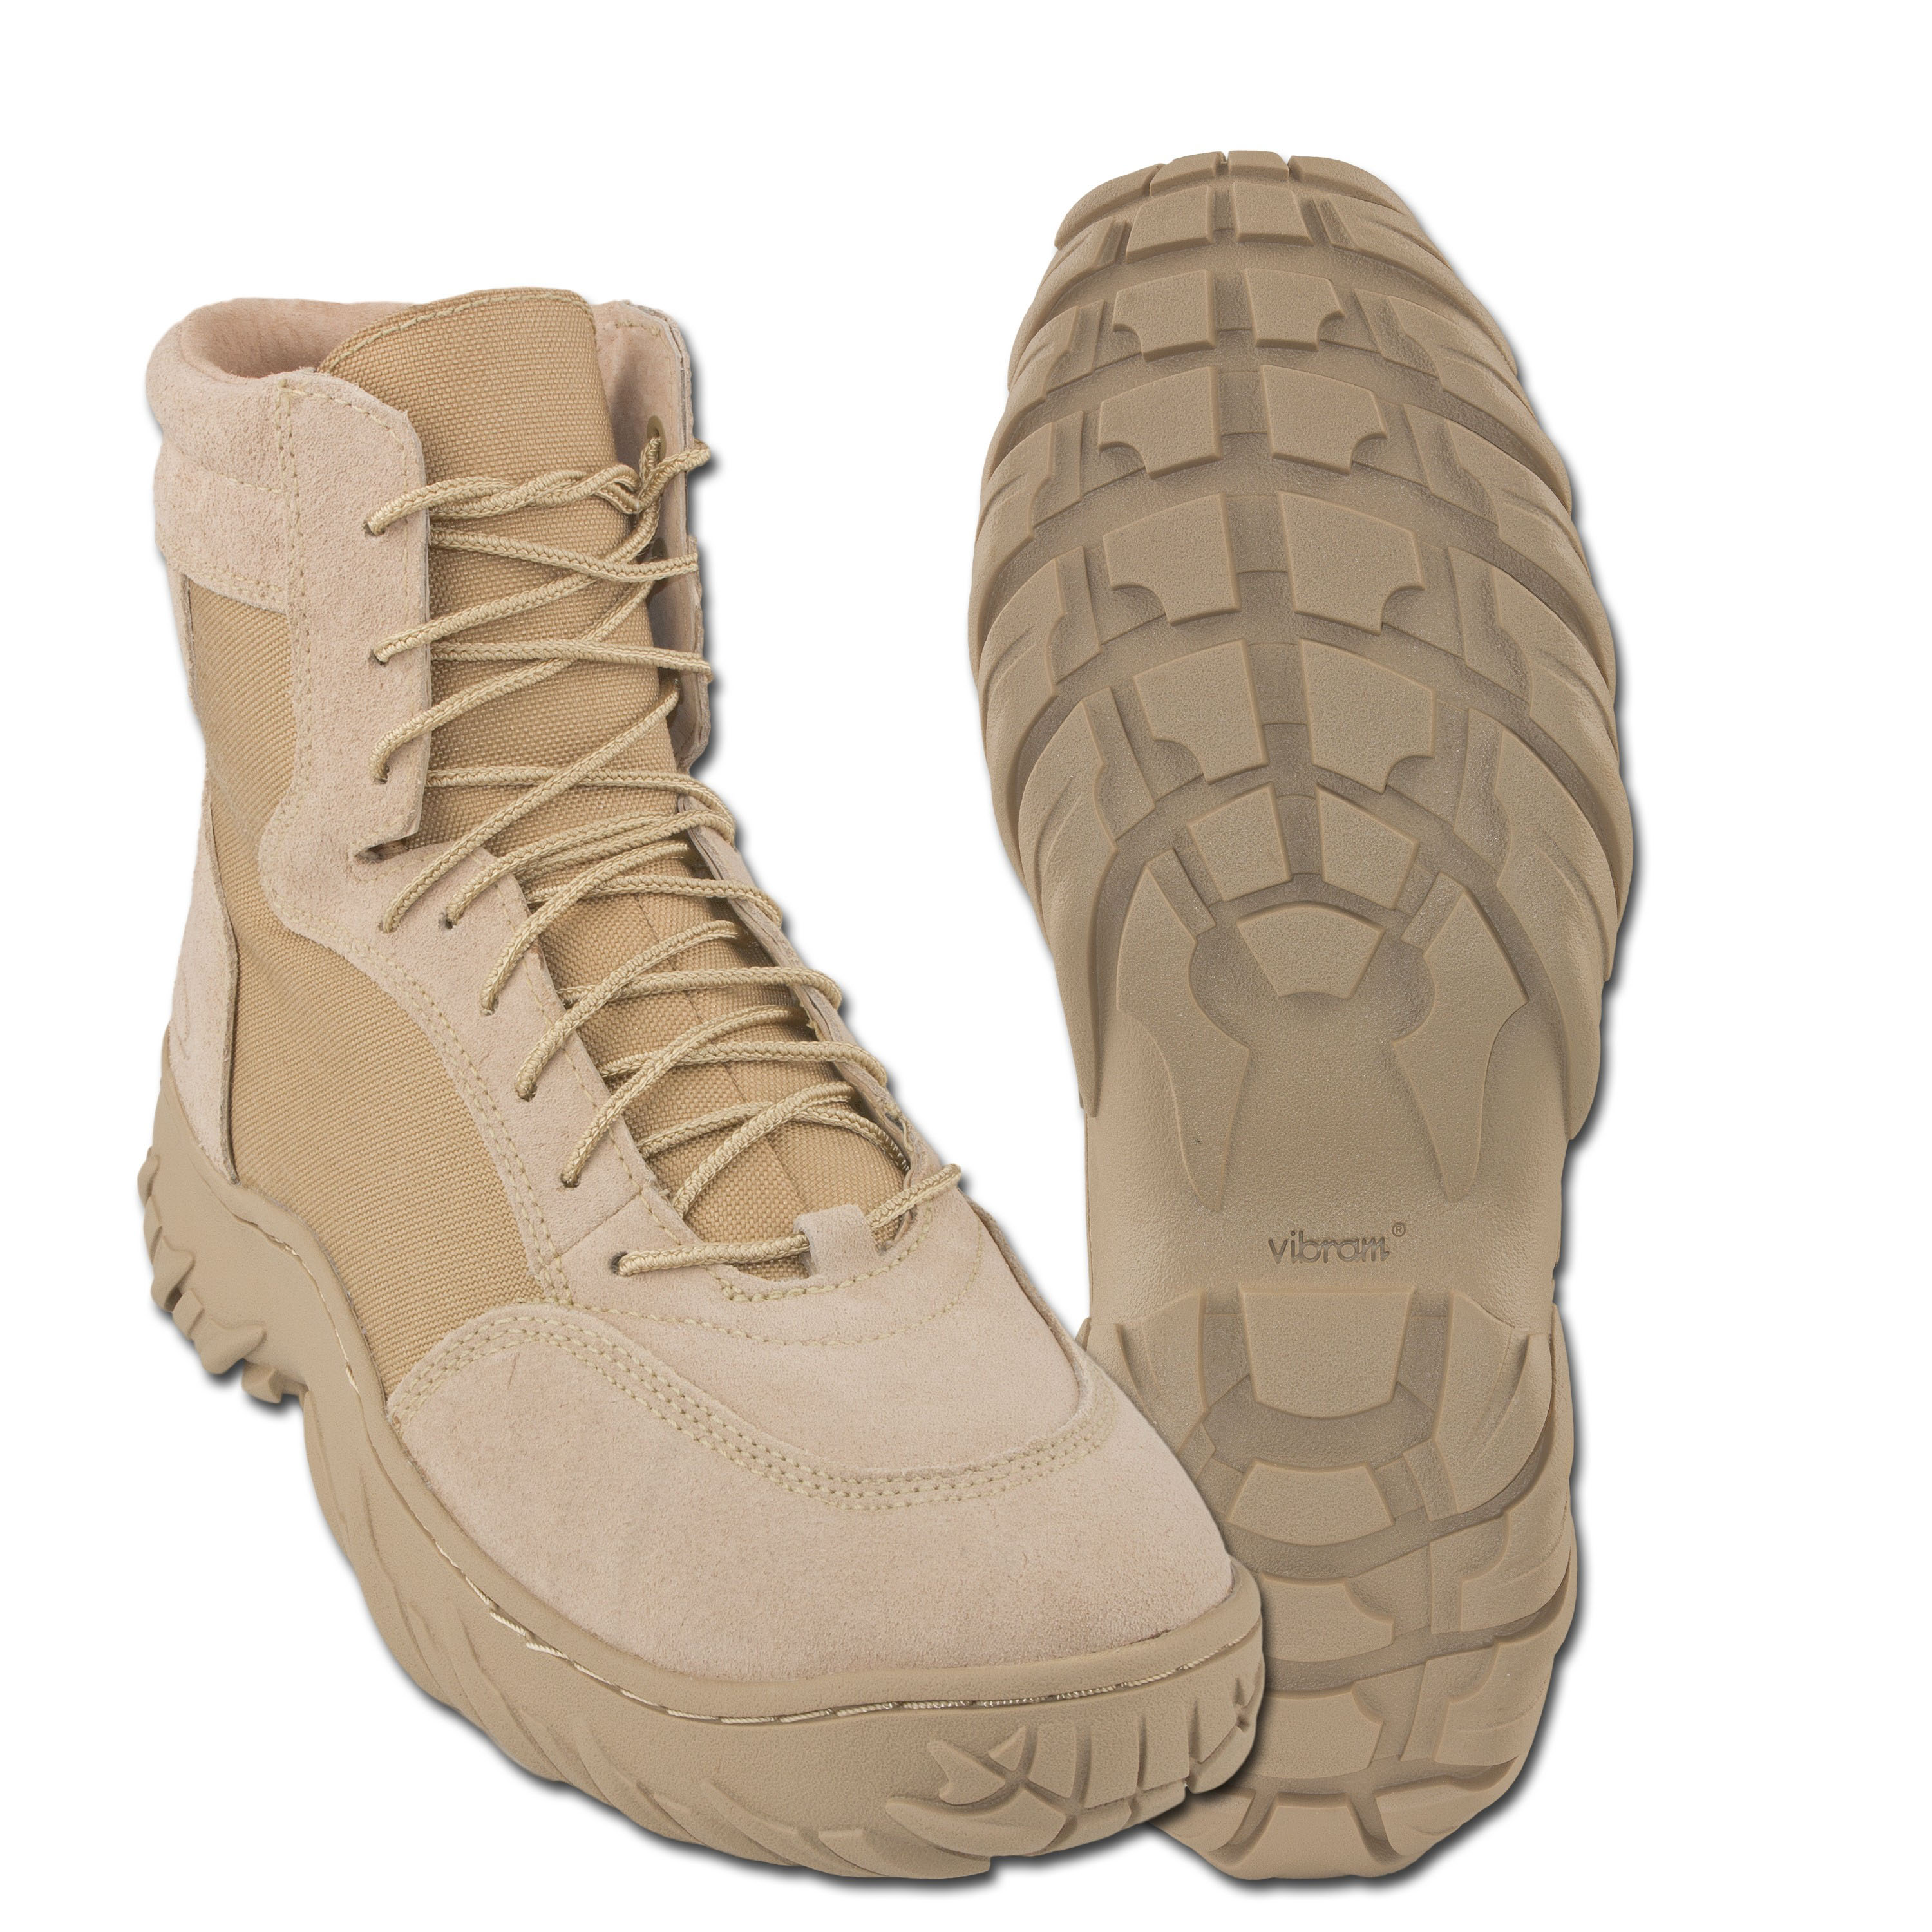 oakley boots desert